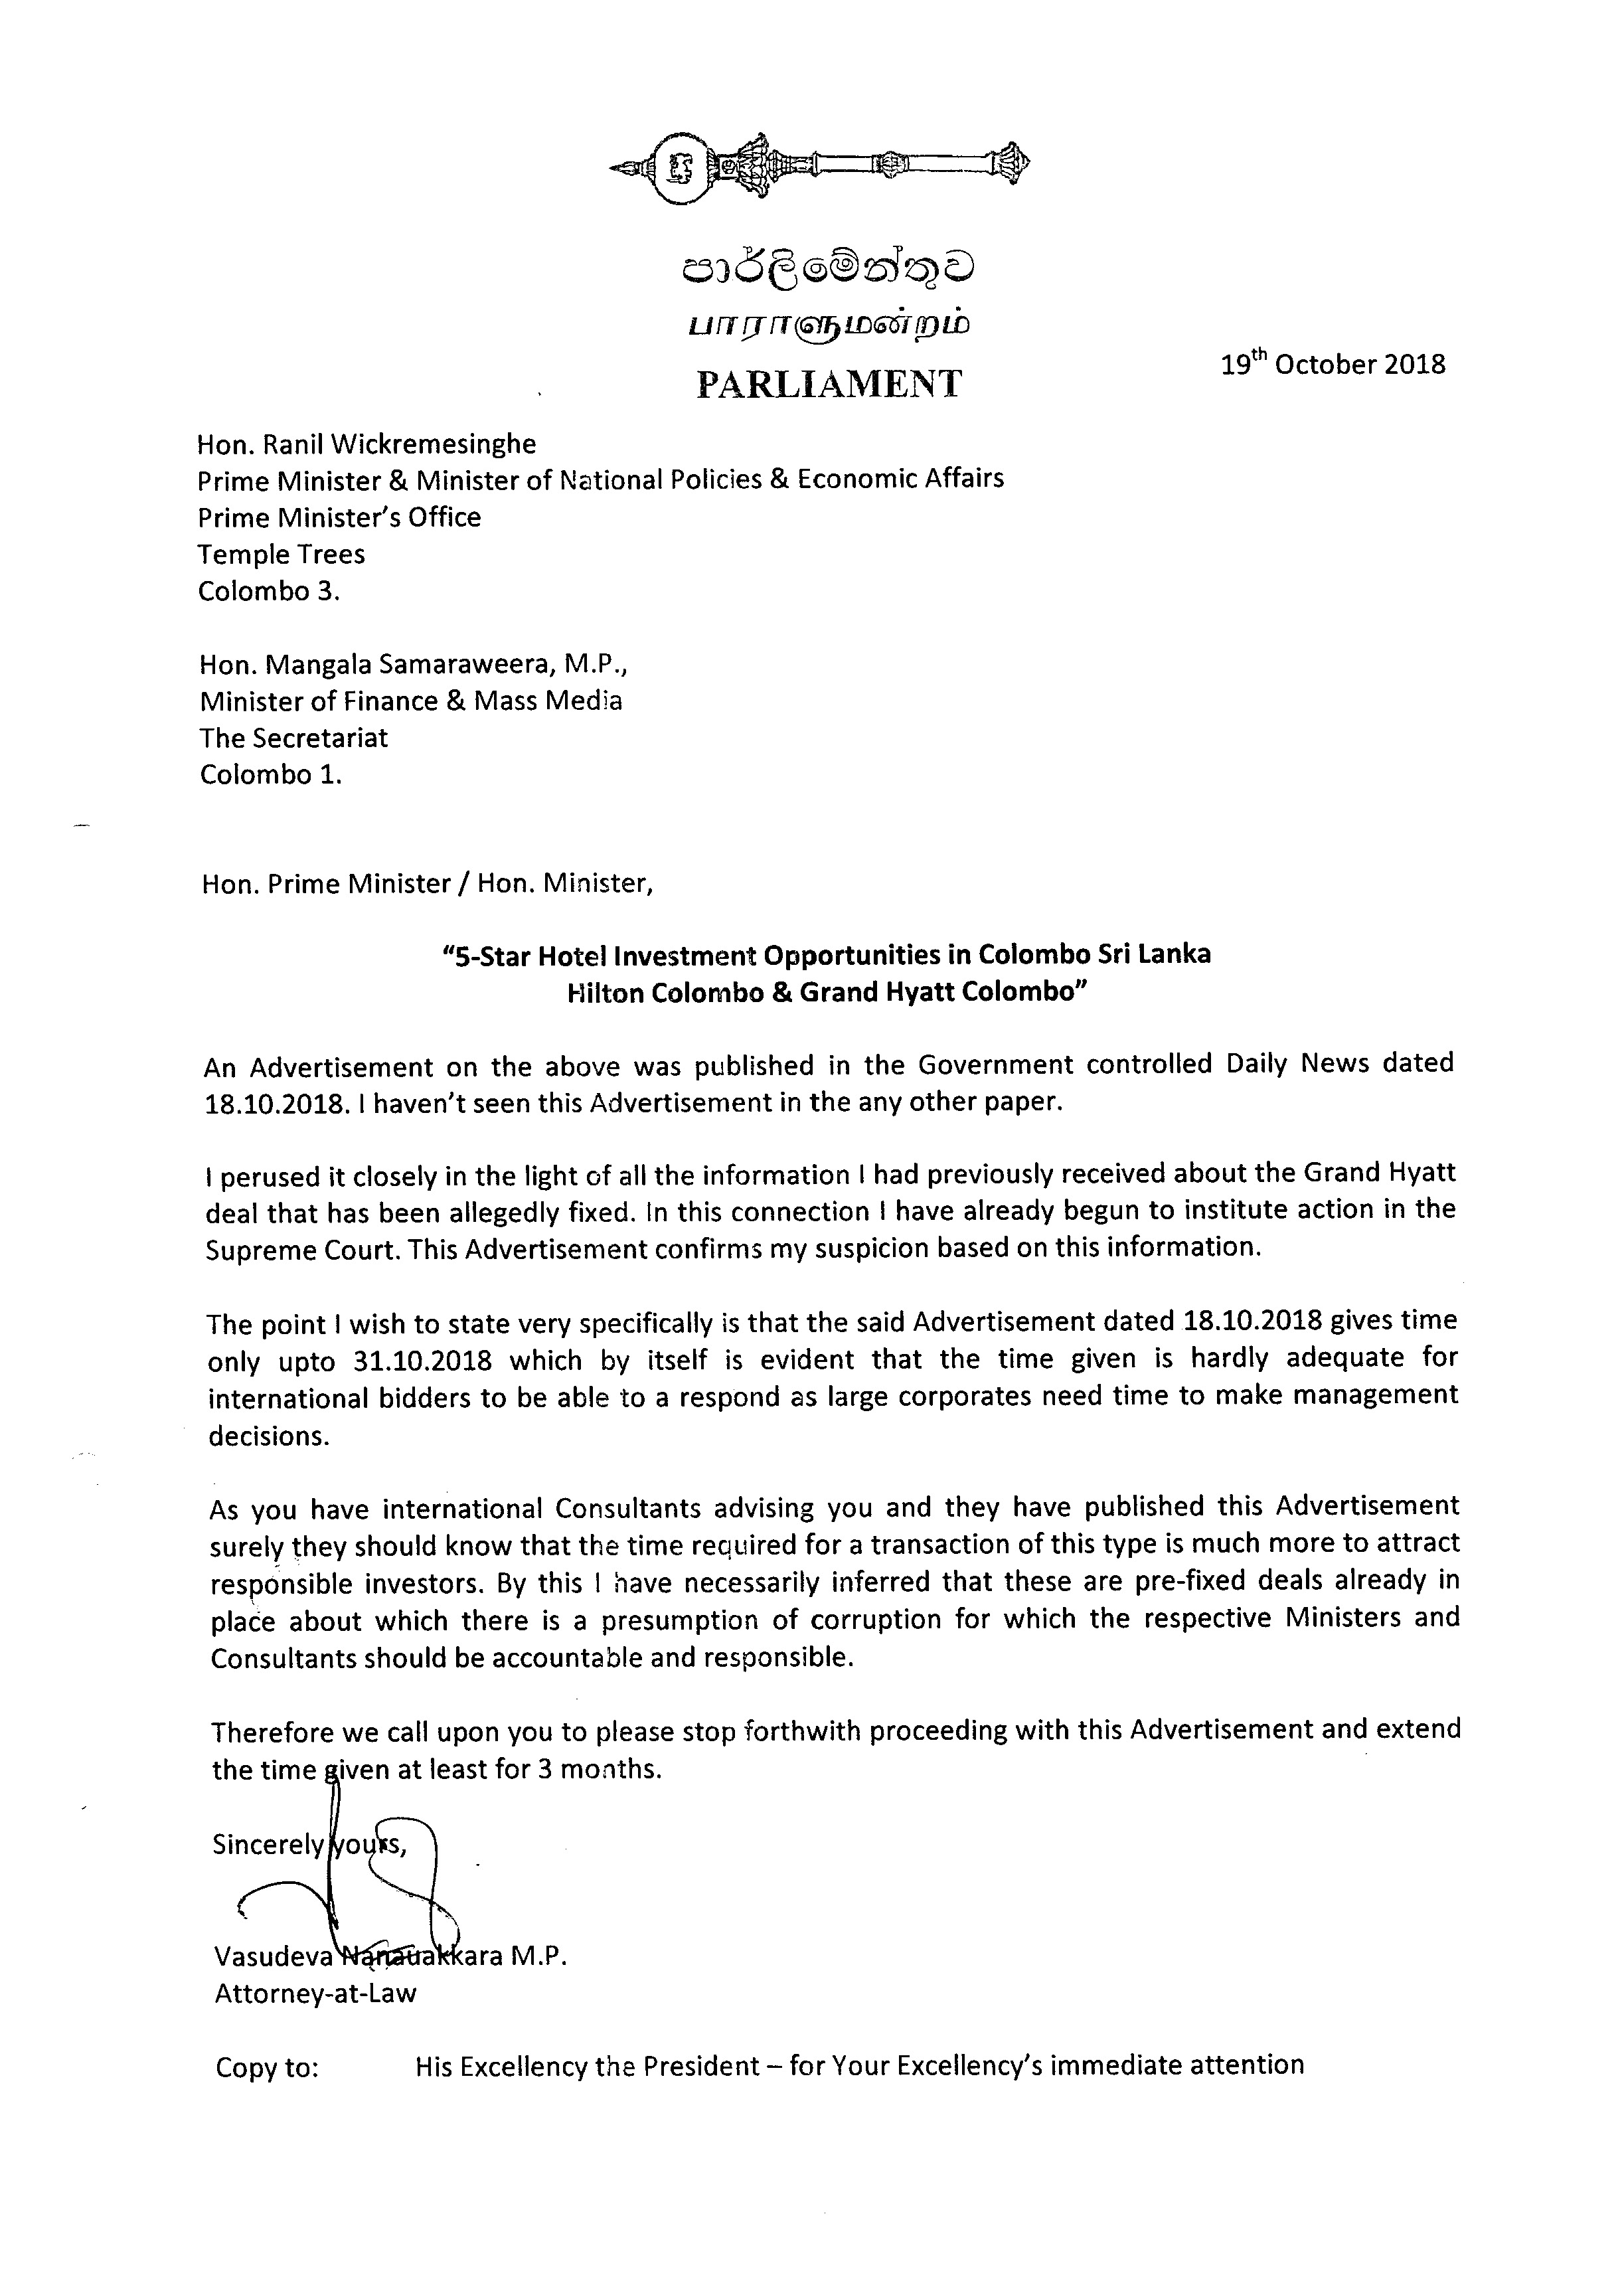 Letter to Prime Minister & Finance Minister